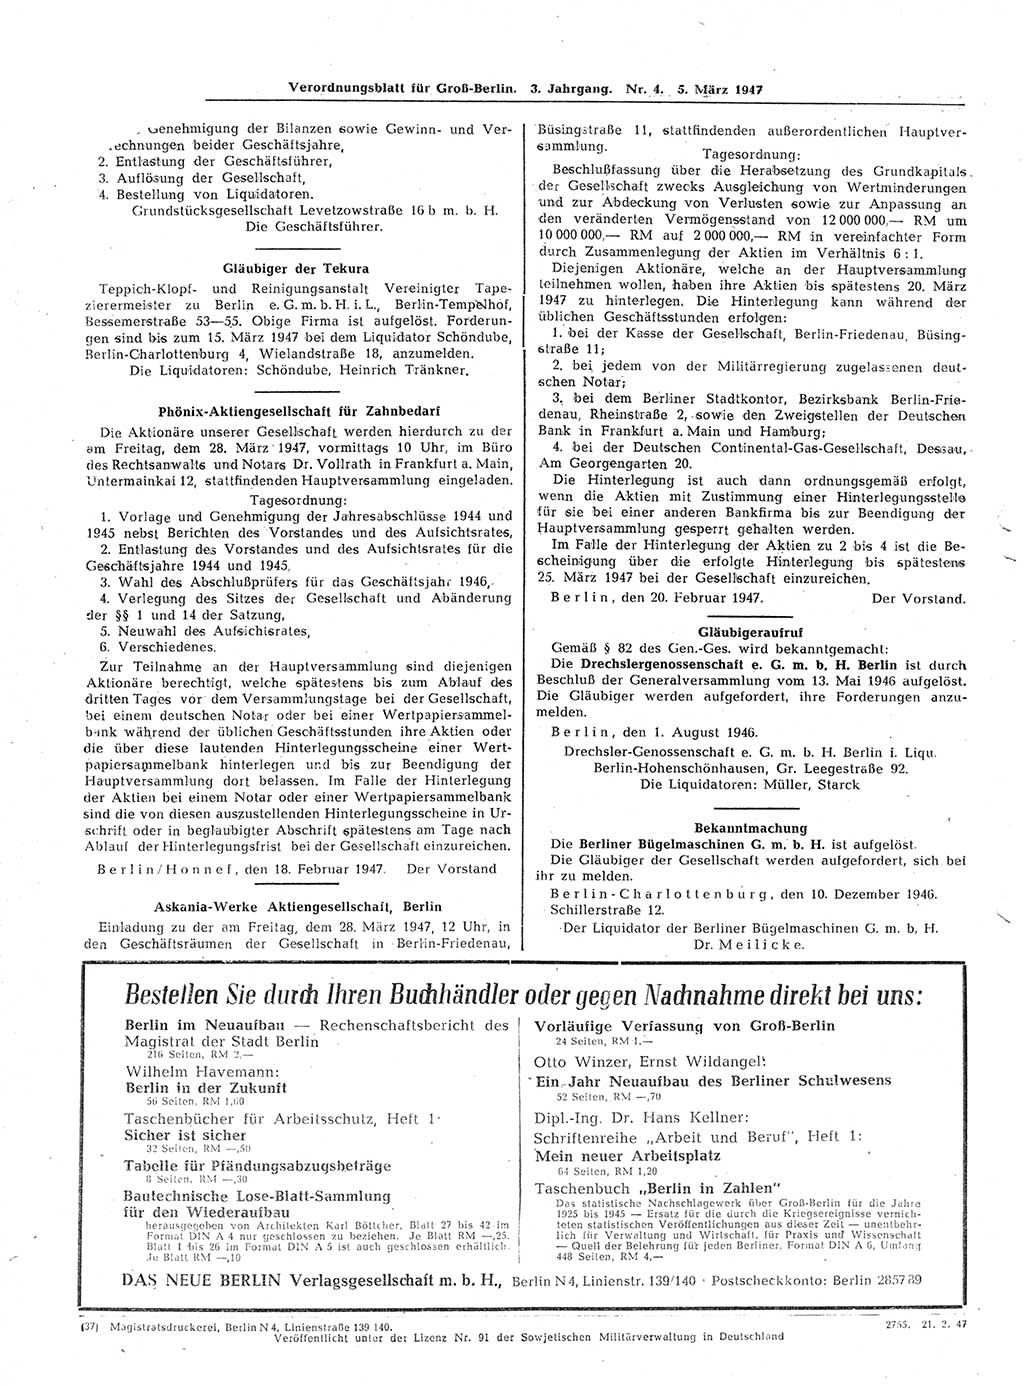 Verordnungsblatt (VOBl.) für Groß-Berlin 1947, Seite 64 (VOBl. Bln. 1947, S. 64)